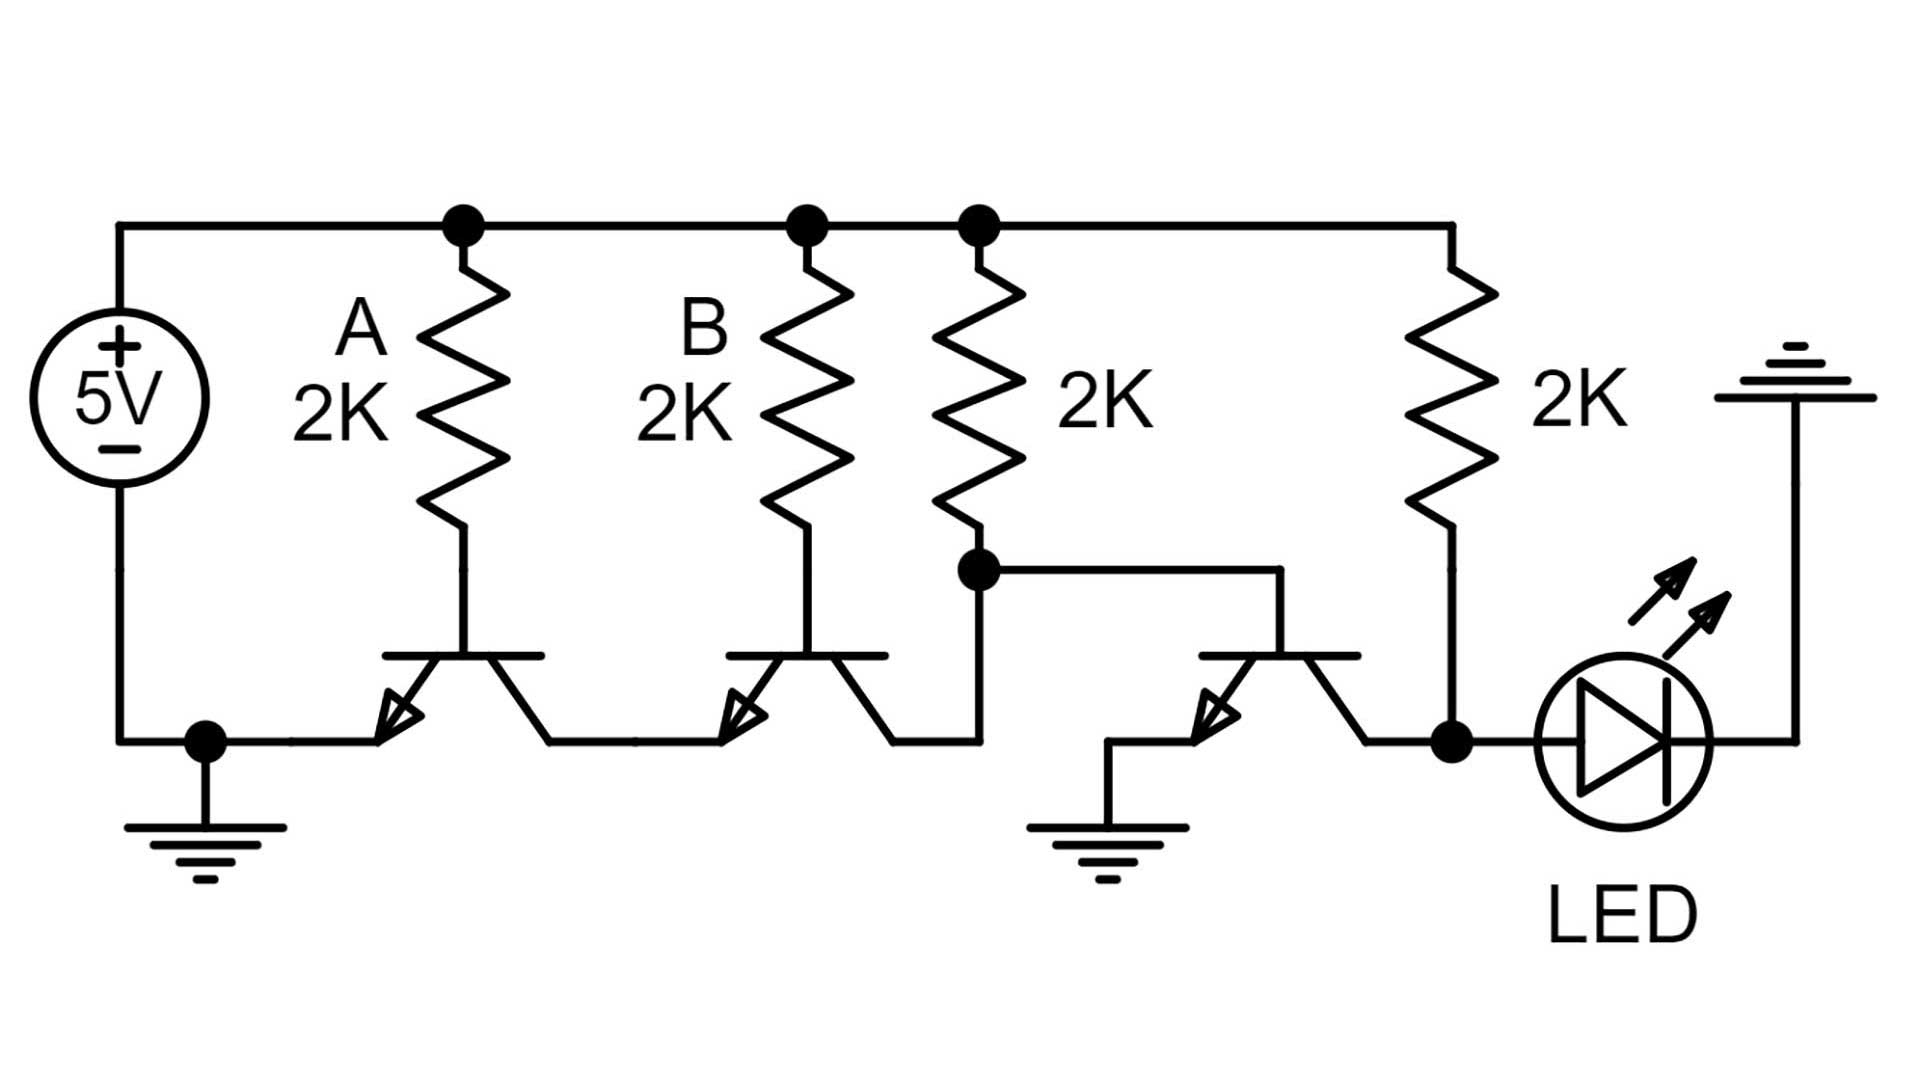 and gate 3 circuit diagram